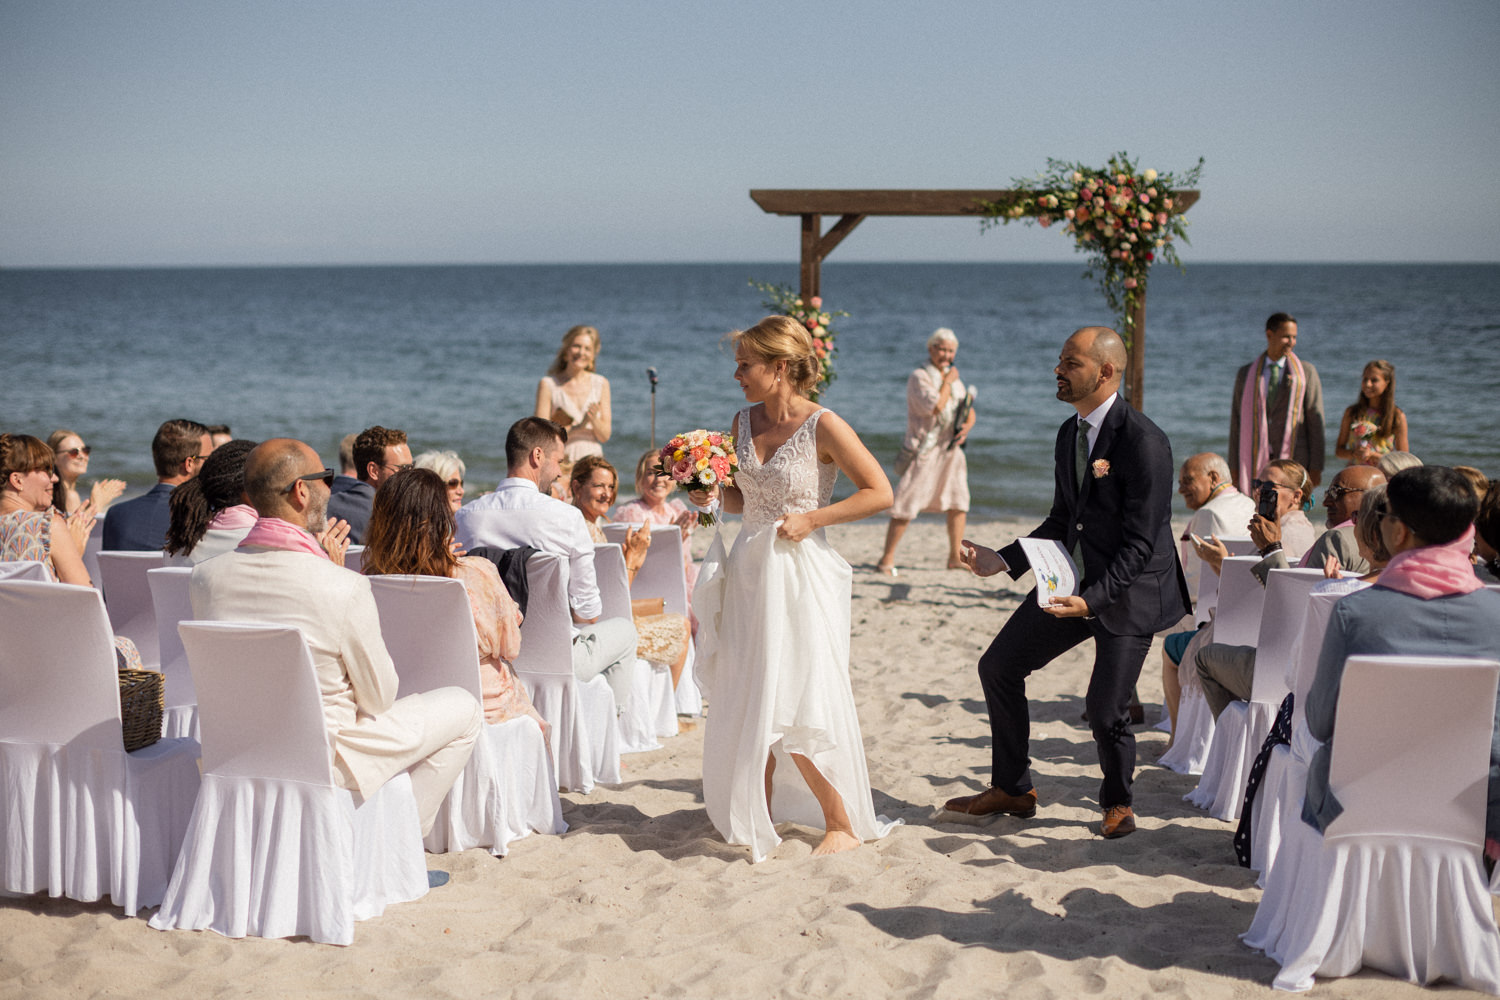 Svenskt-indiskt strandbröllop på YSB, Skåne. Foto: Tove Lundquist, bröllopsfotograf i Skåne.